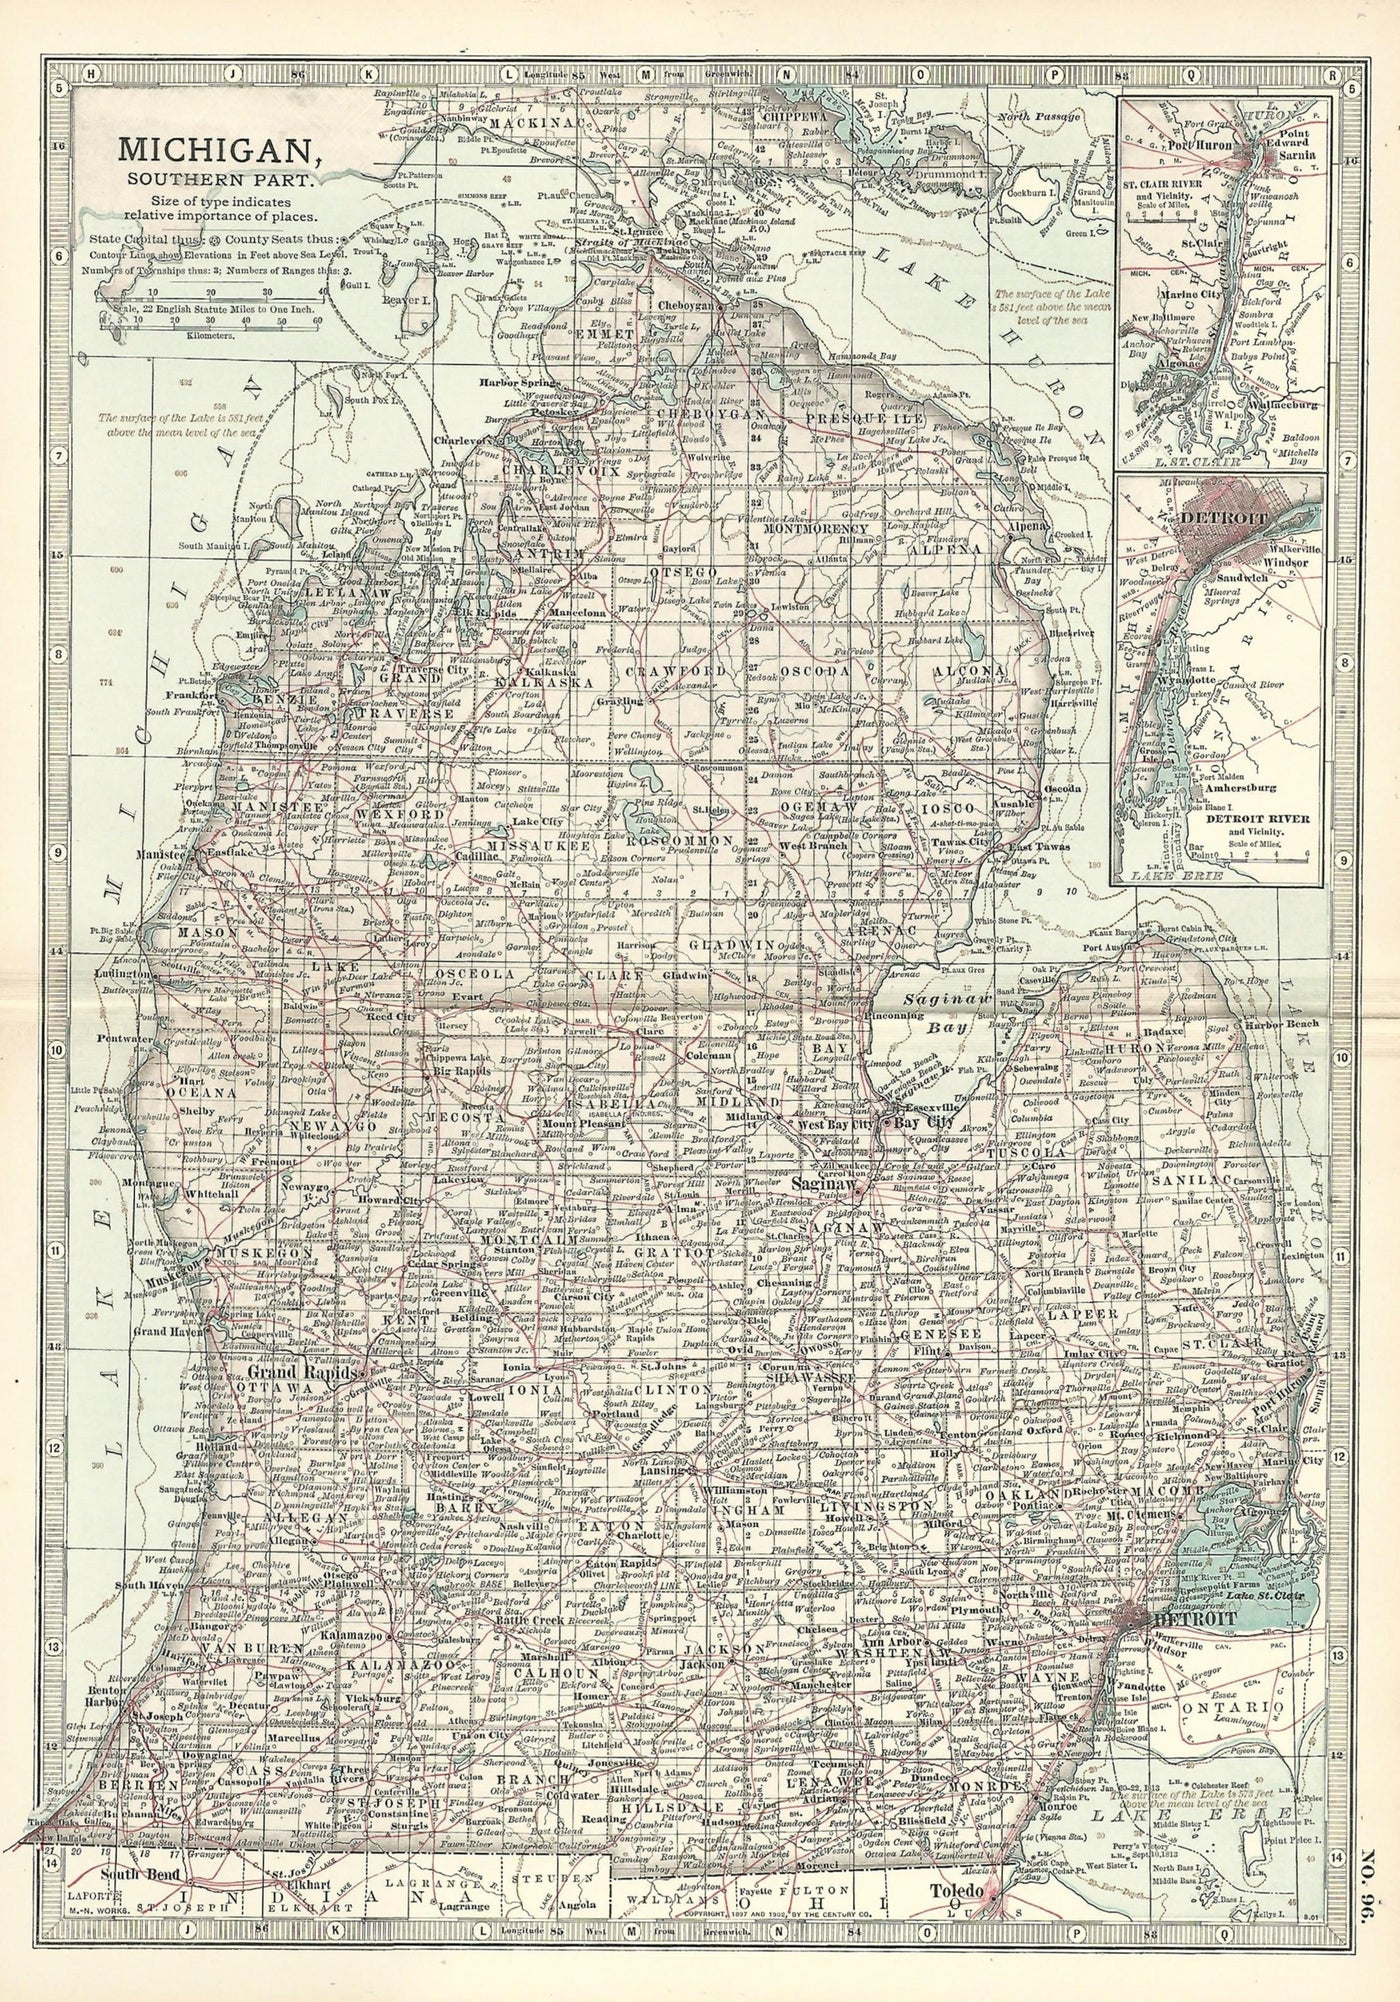 Michigan, Southern Part, No.96, Encyclopaedia Britannica 1903